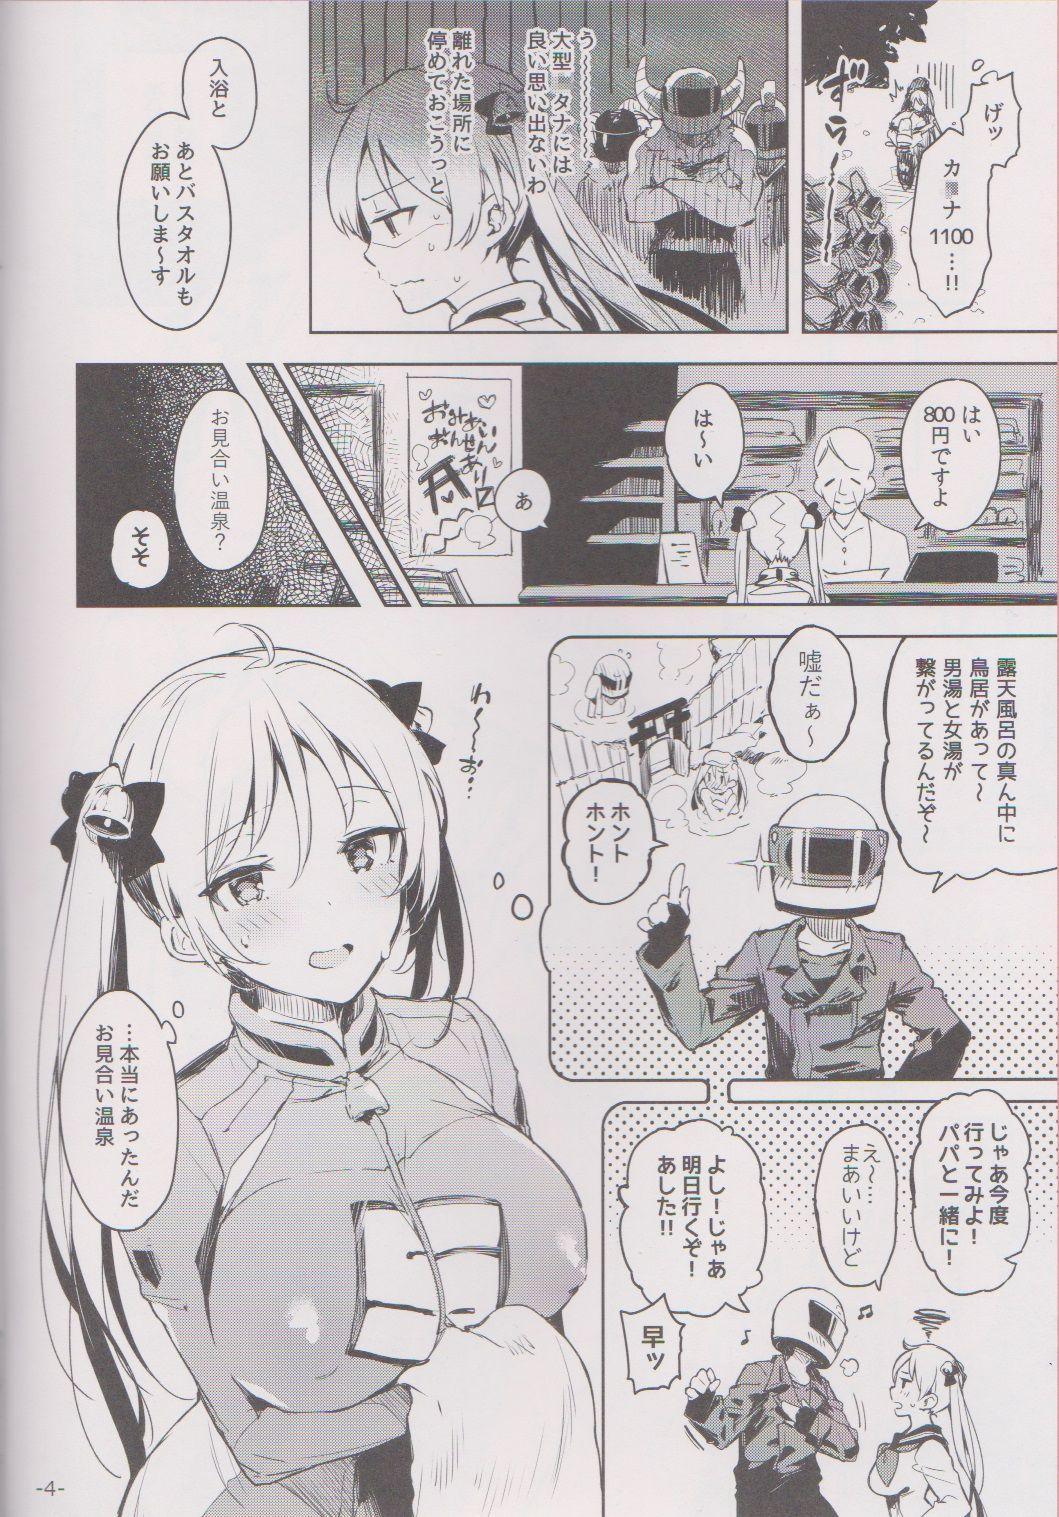 Follada Kabehame Rin-chan Kikiippatsu!! - Bakuon Famosa - Page 3